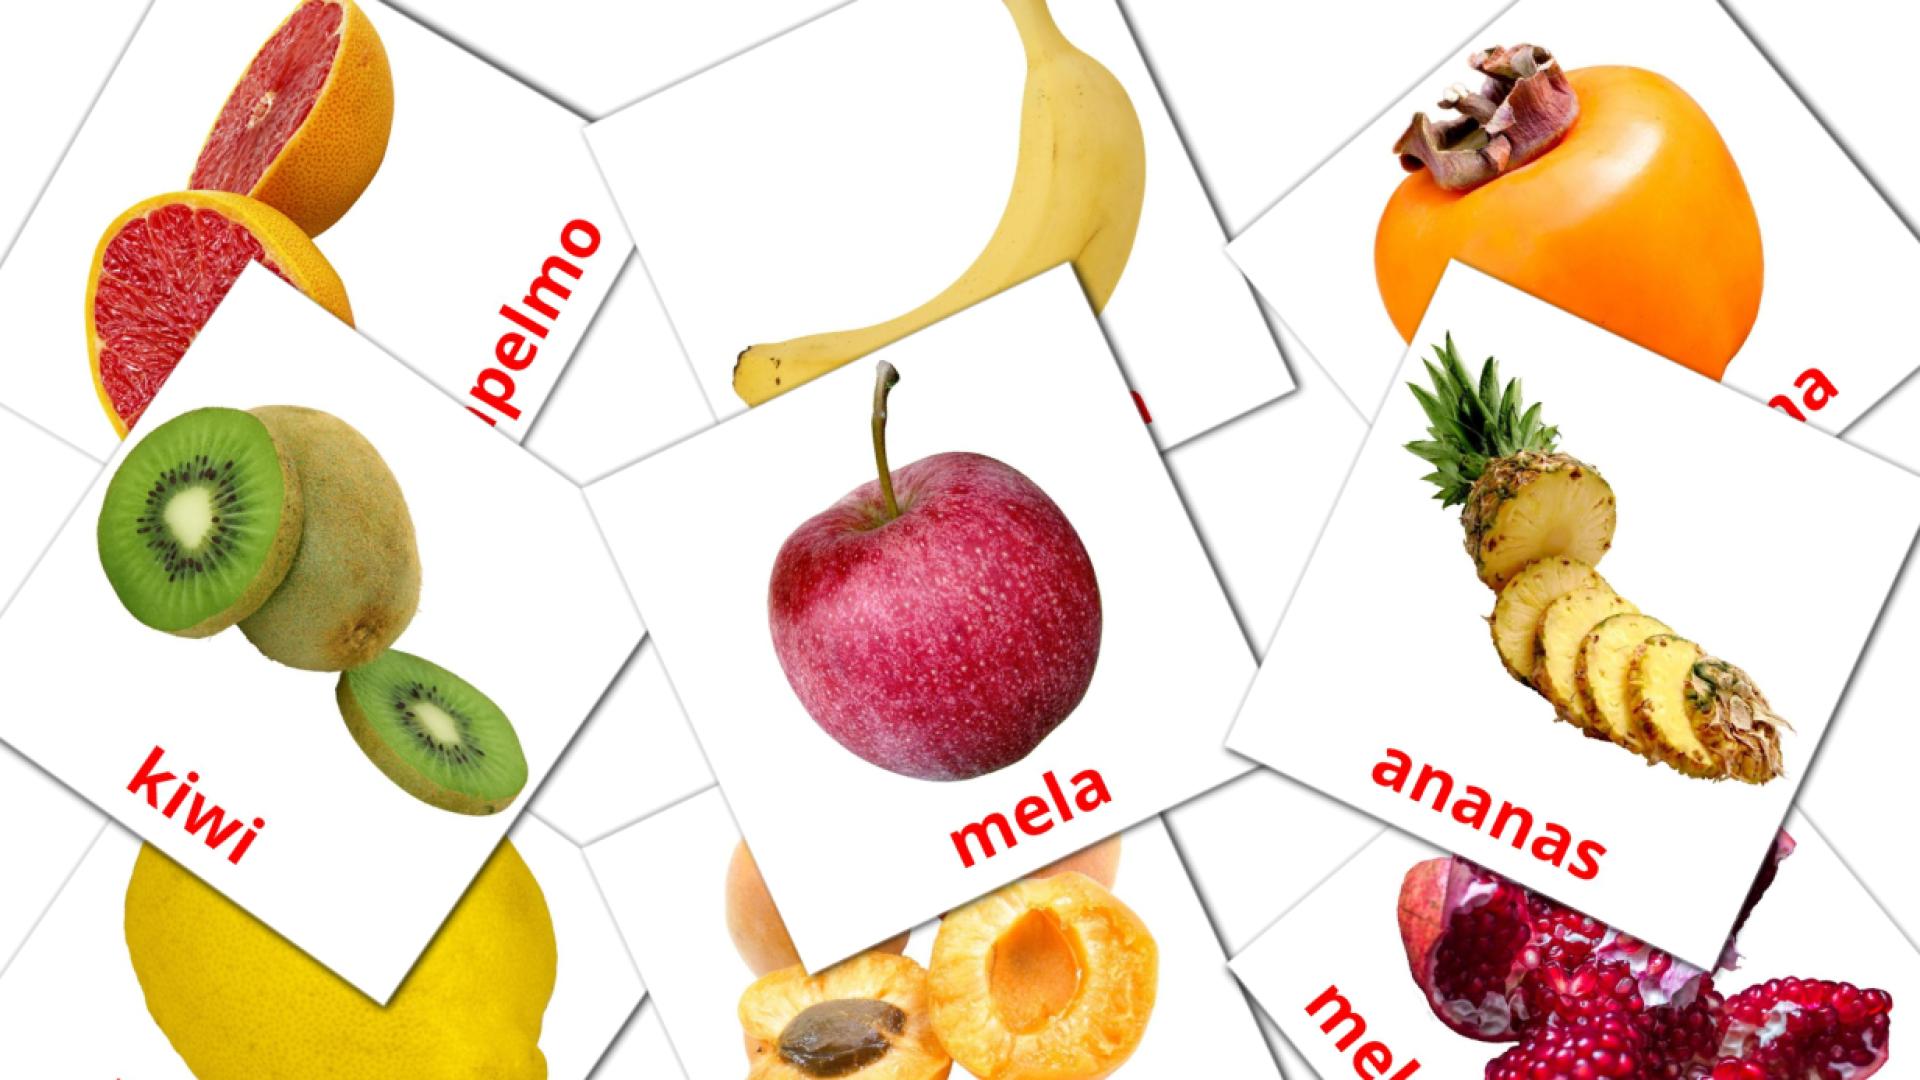 20 Frutta flashcards